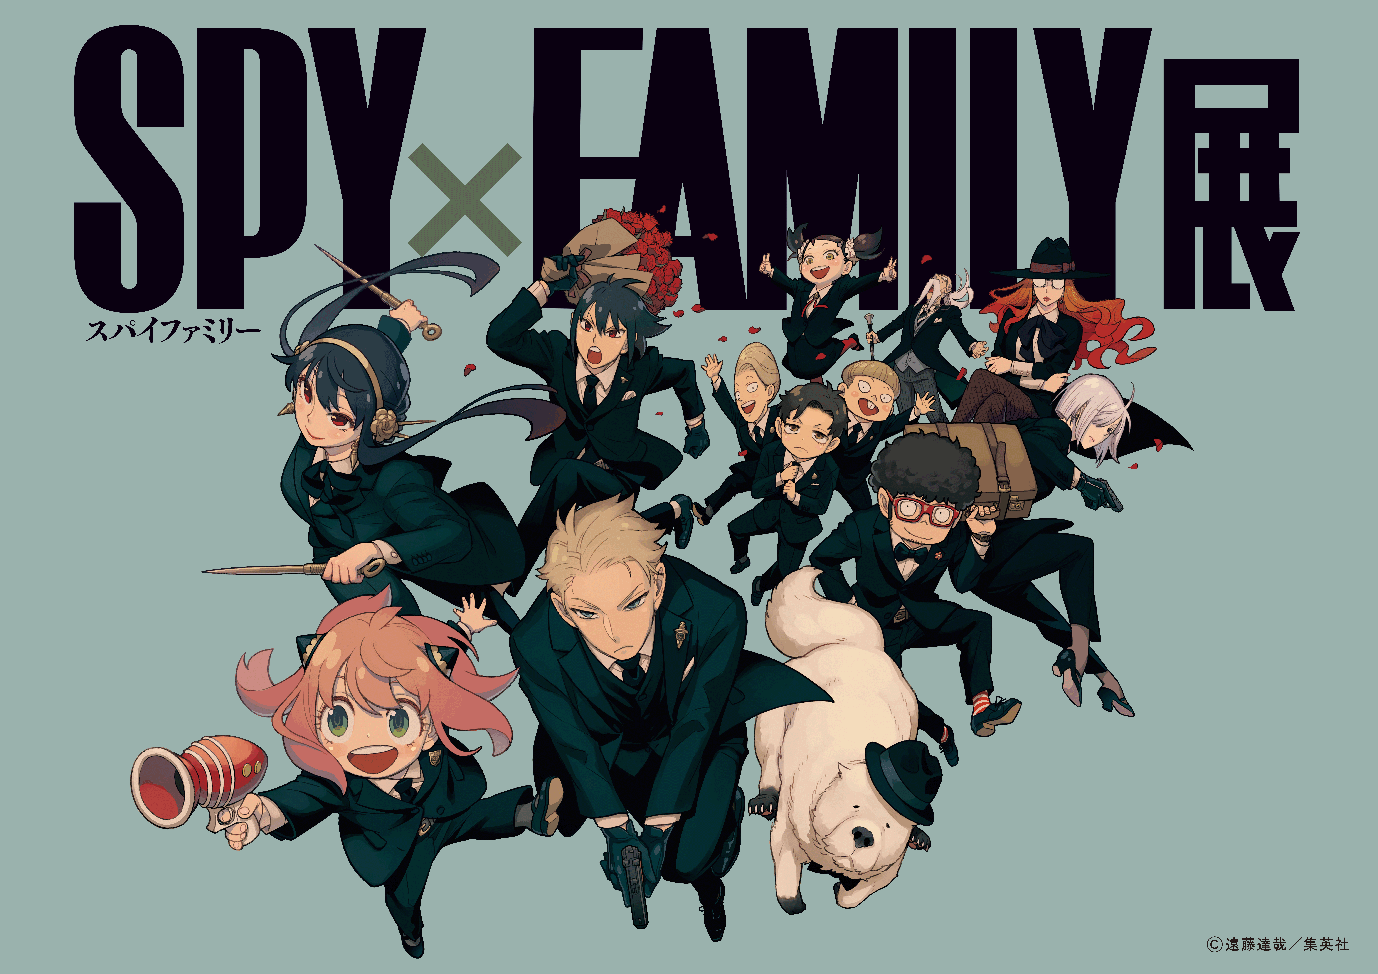 Spy×Family TV Anime Adaptation Announced for 2022 - Otaku Tale